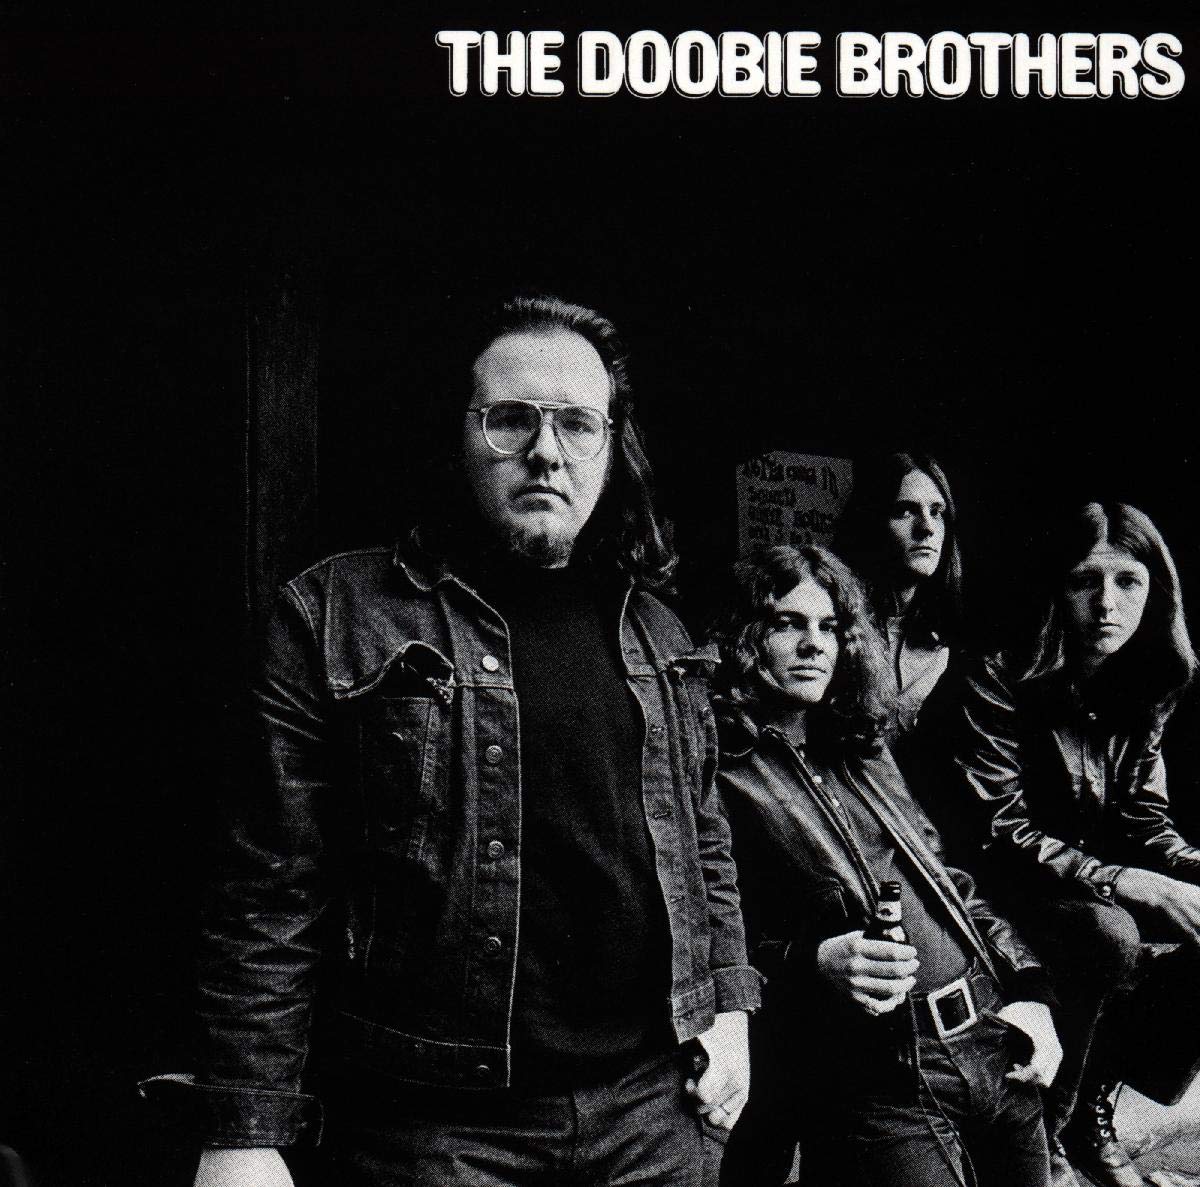 The Doobie Brothers - The Doobie Brothers (1971). 